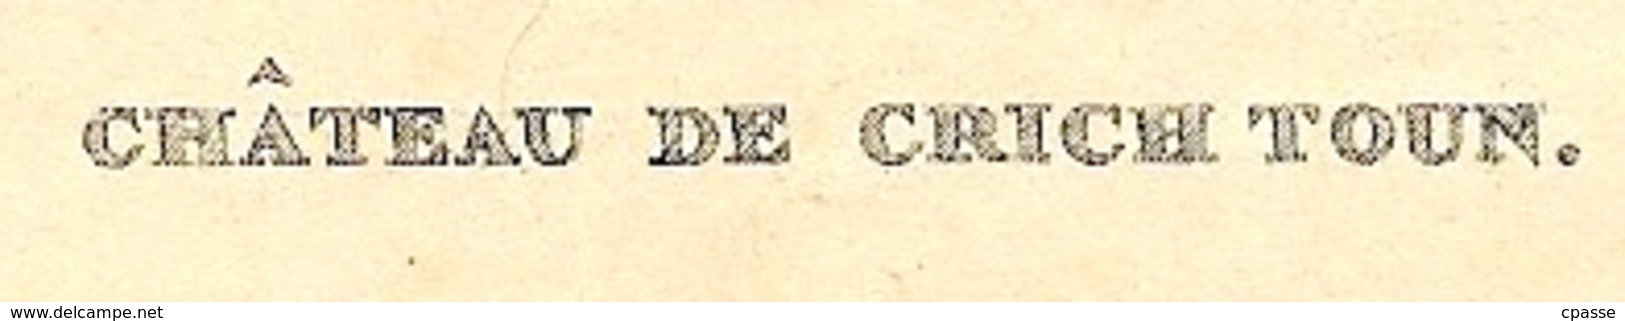 Fragment D'Hors-Texte - CRICHTON CASTLE Scotland Ecosse - Matériel Et Accessoires